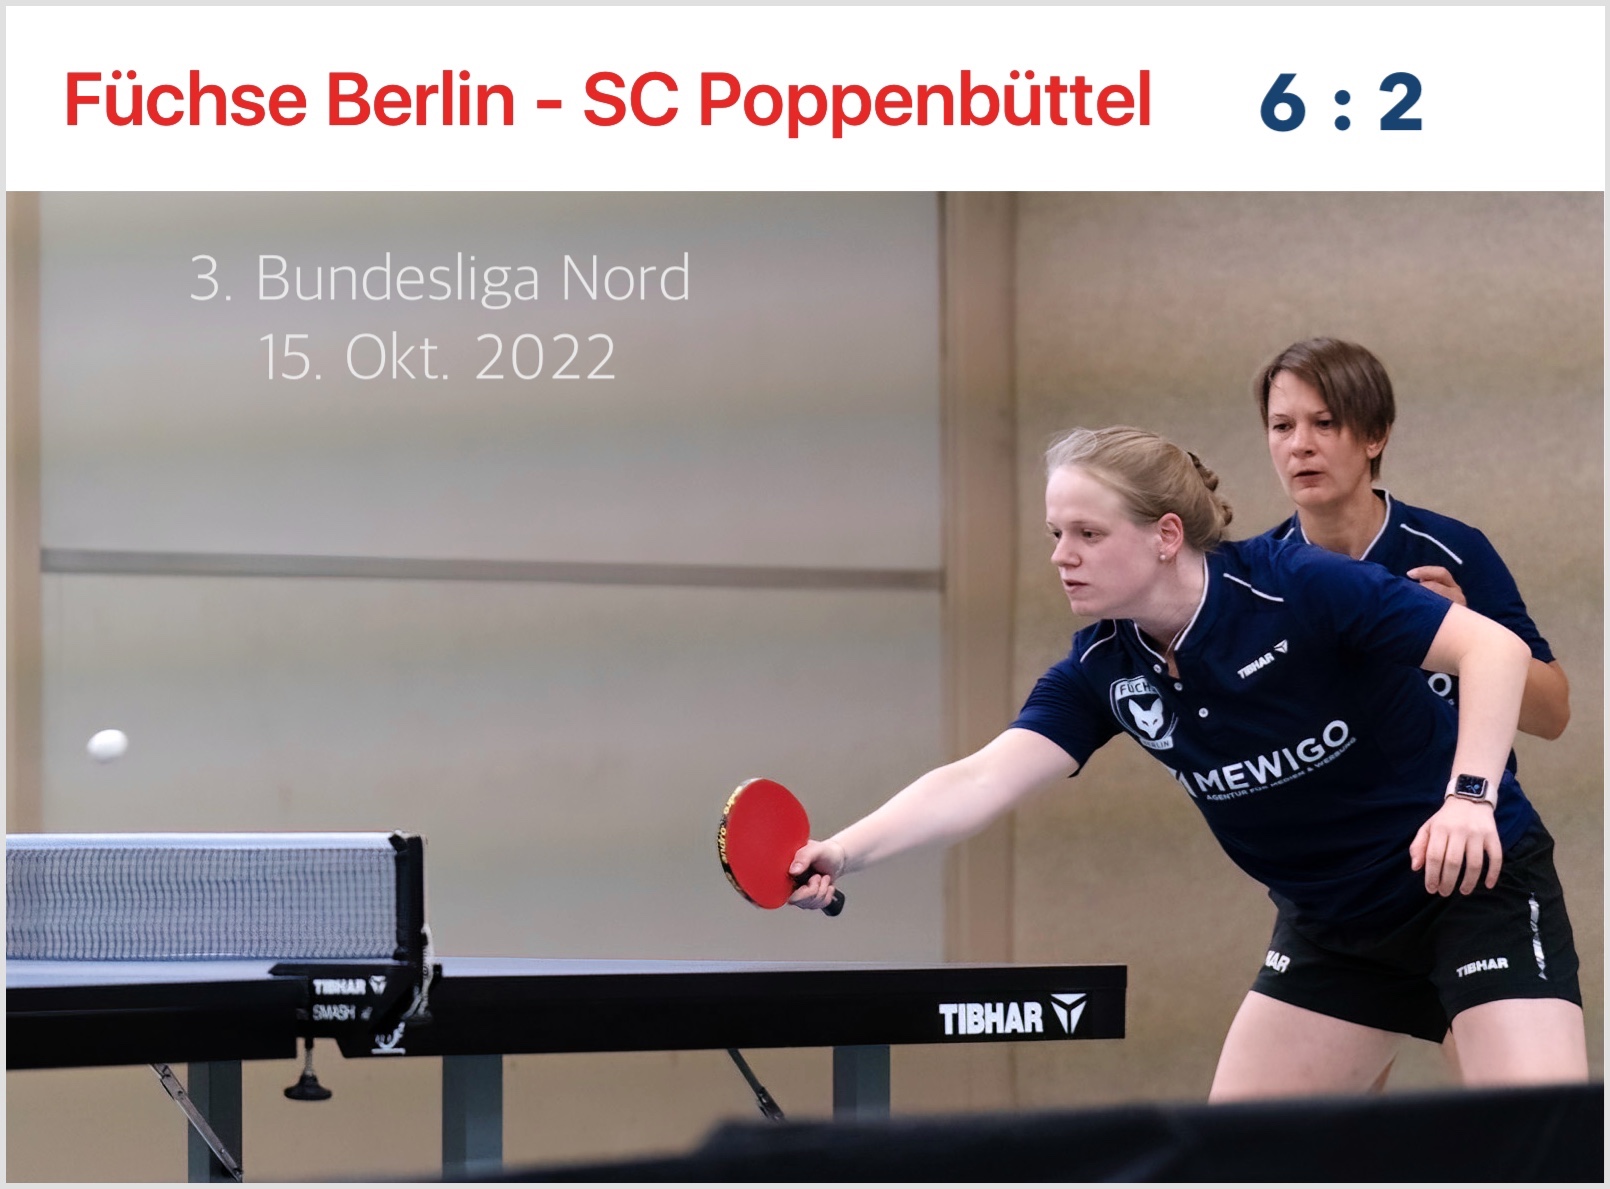 Füchse Berlin gewinnt gegen den SC Poppenbüttel am 15.10.2022 6 zu 2. Auf dem Bild sieht man zwei Frauen an der Tischtennisplatte. Eine von ihnen hat eine Kelle in der Hand und schaut konzentriert dem Ball nach, welcher gerade übers Netz fliegt.